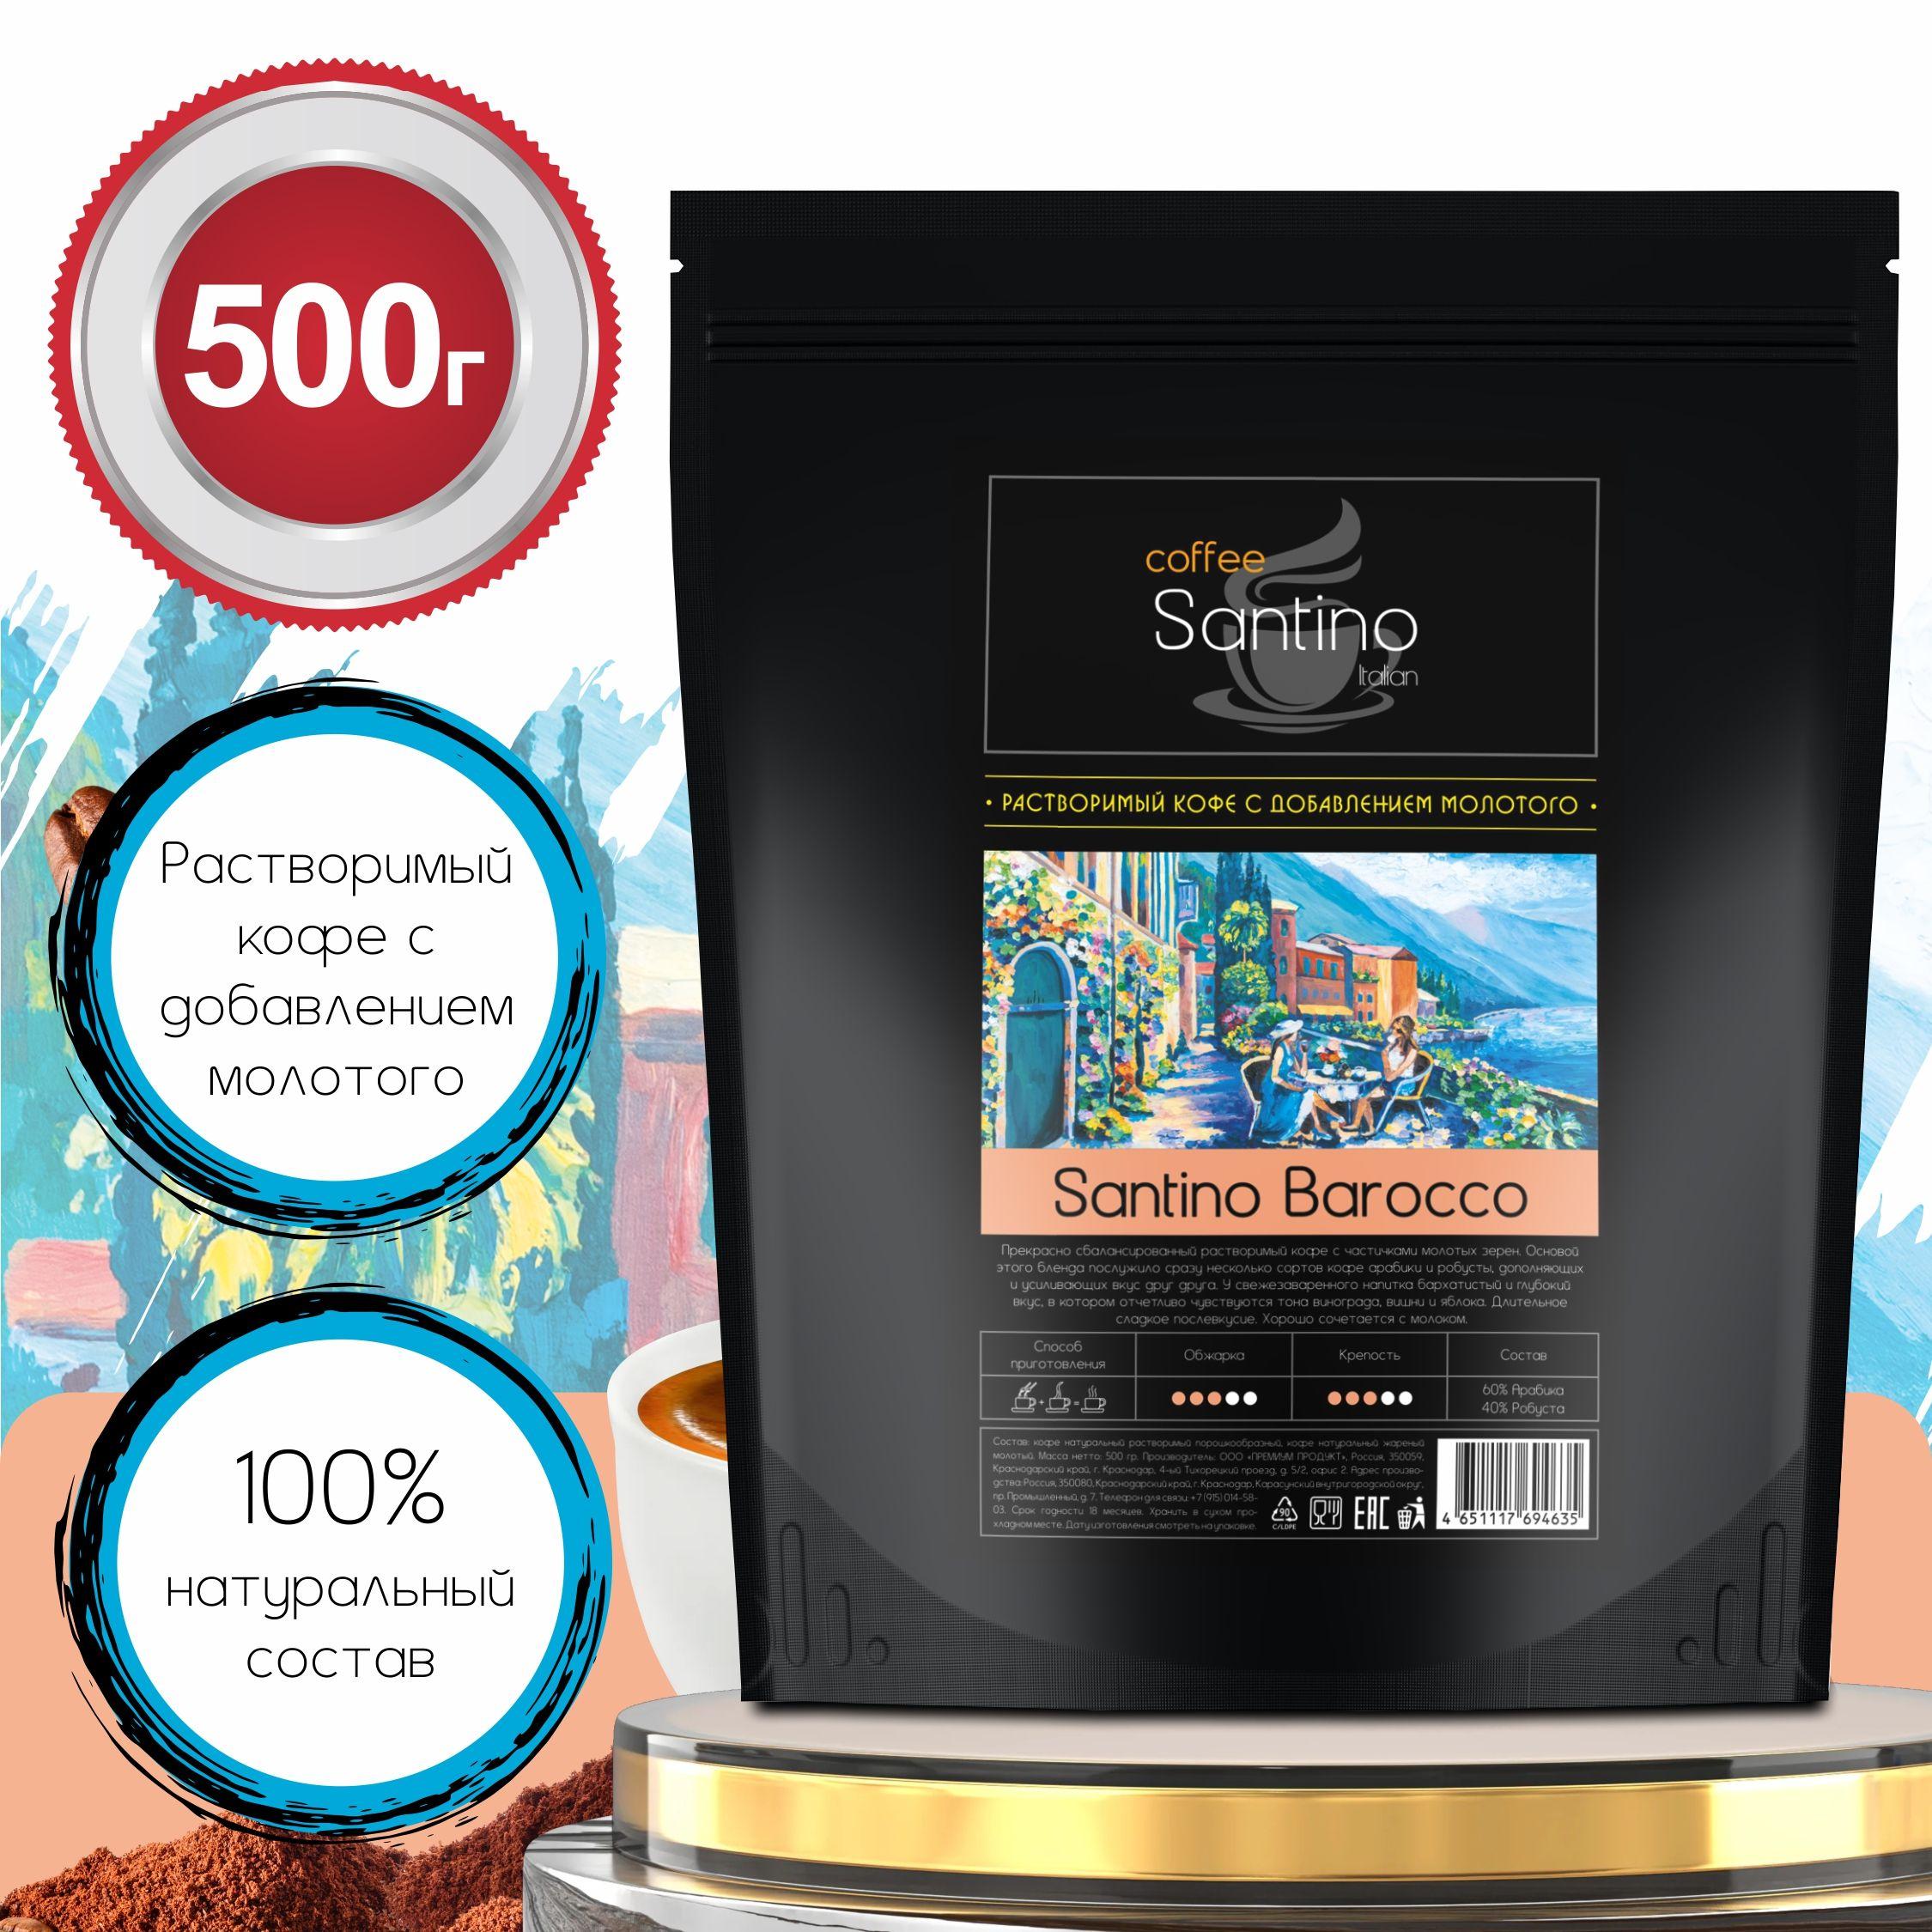 Santino coffee | Кофе растворимый 500 гр с добавлением натурального жареного молотого кофе Santino Barocco